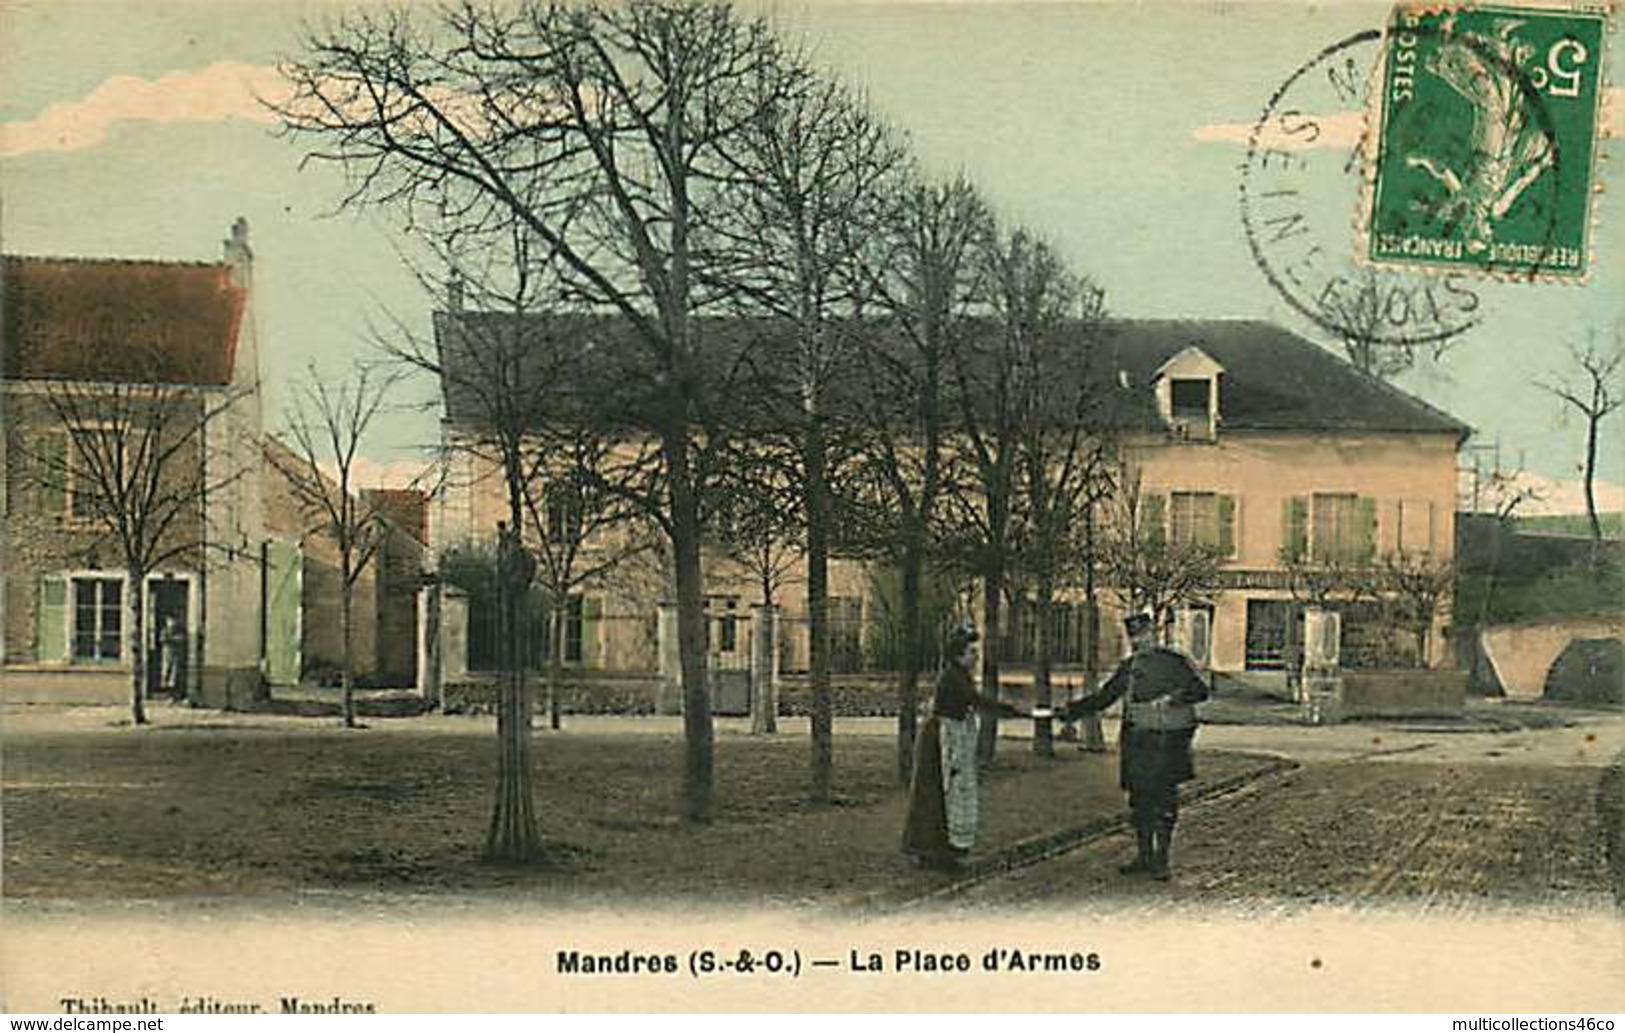 090419 - 94 MANDRES La Place D'armes - Remise Du Courrier Par Le Facteur - Postes PTT - Mandres Les Roses